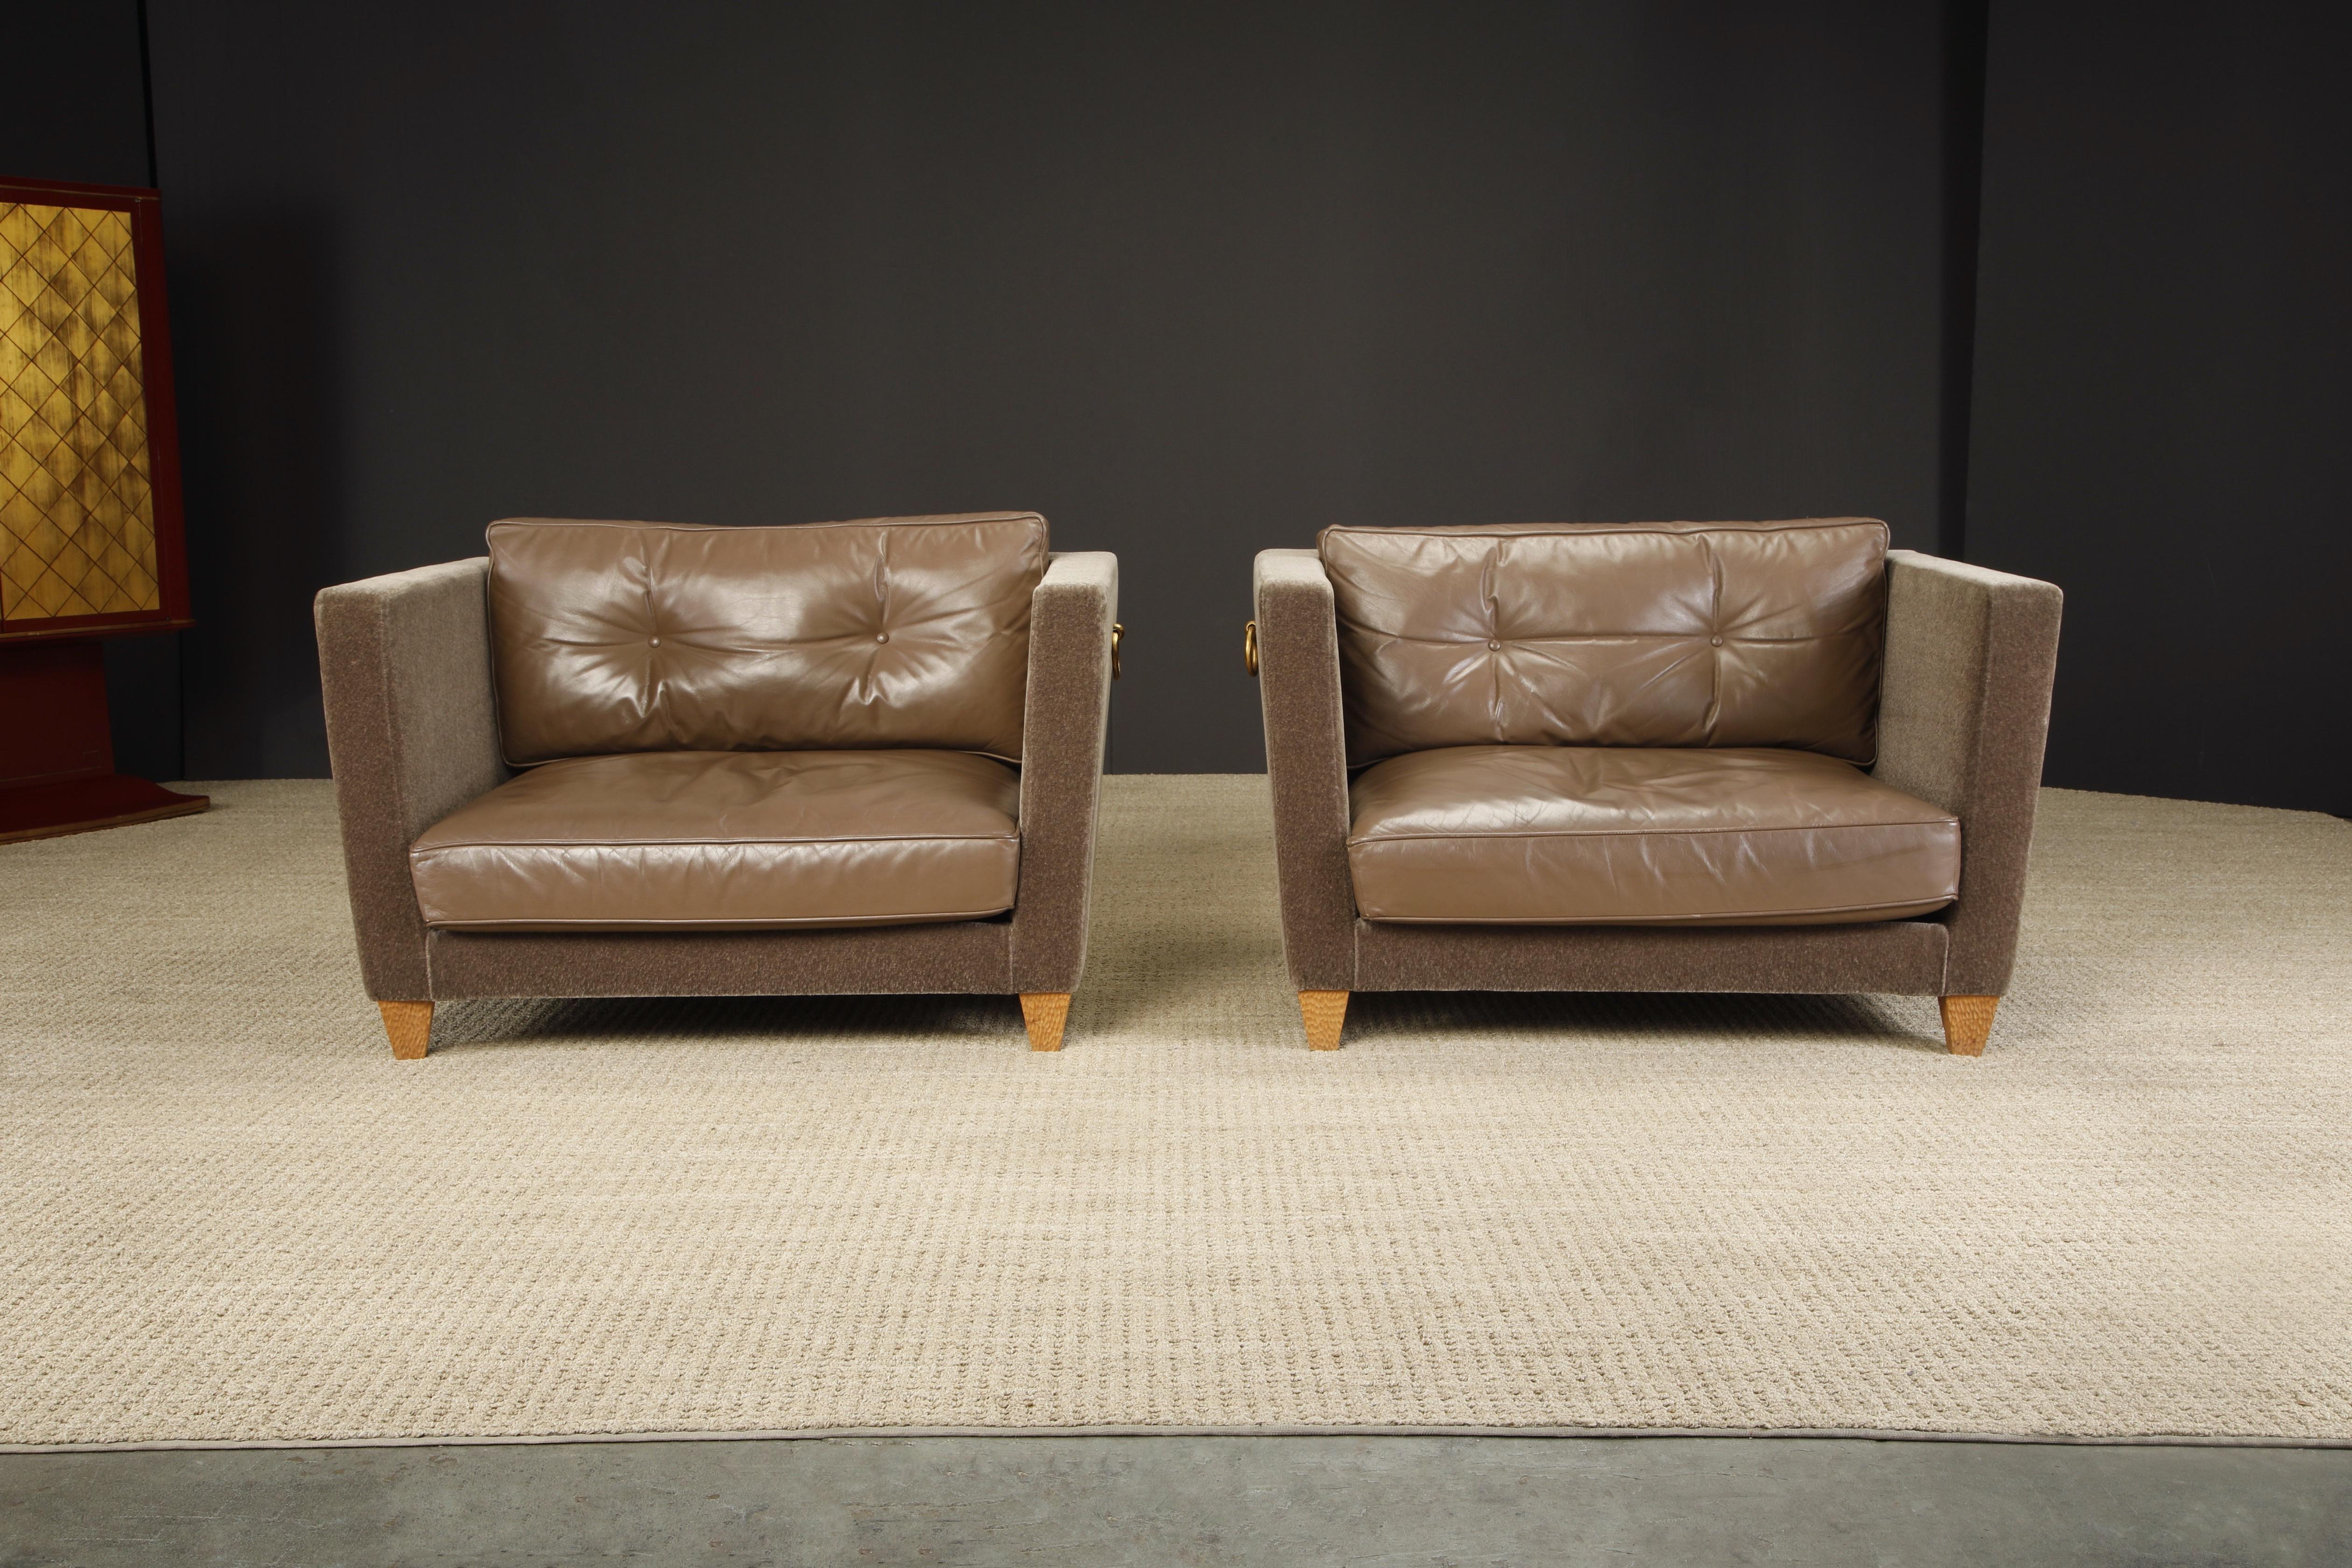 Le summum du luxe en termes de taille et de matériaux, cette paire de fauteuils club surdimensionnés 